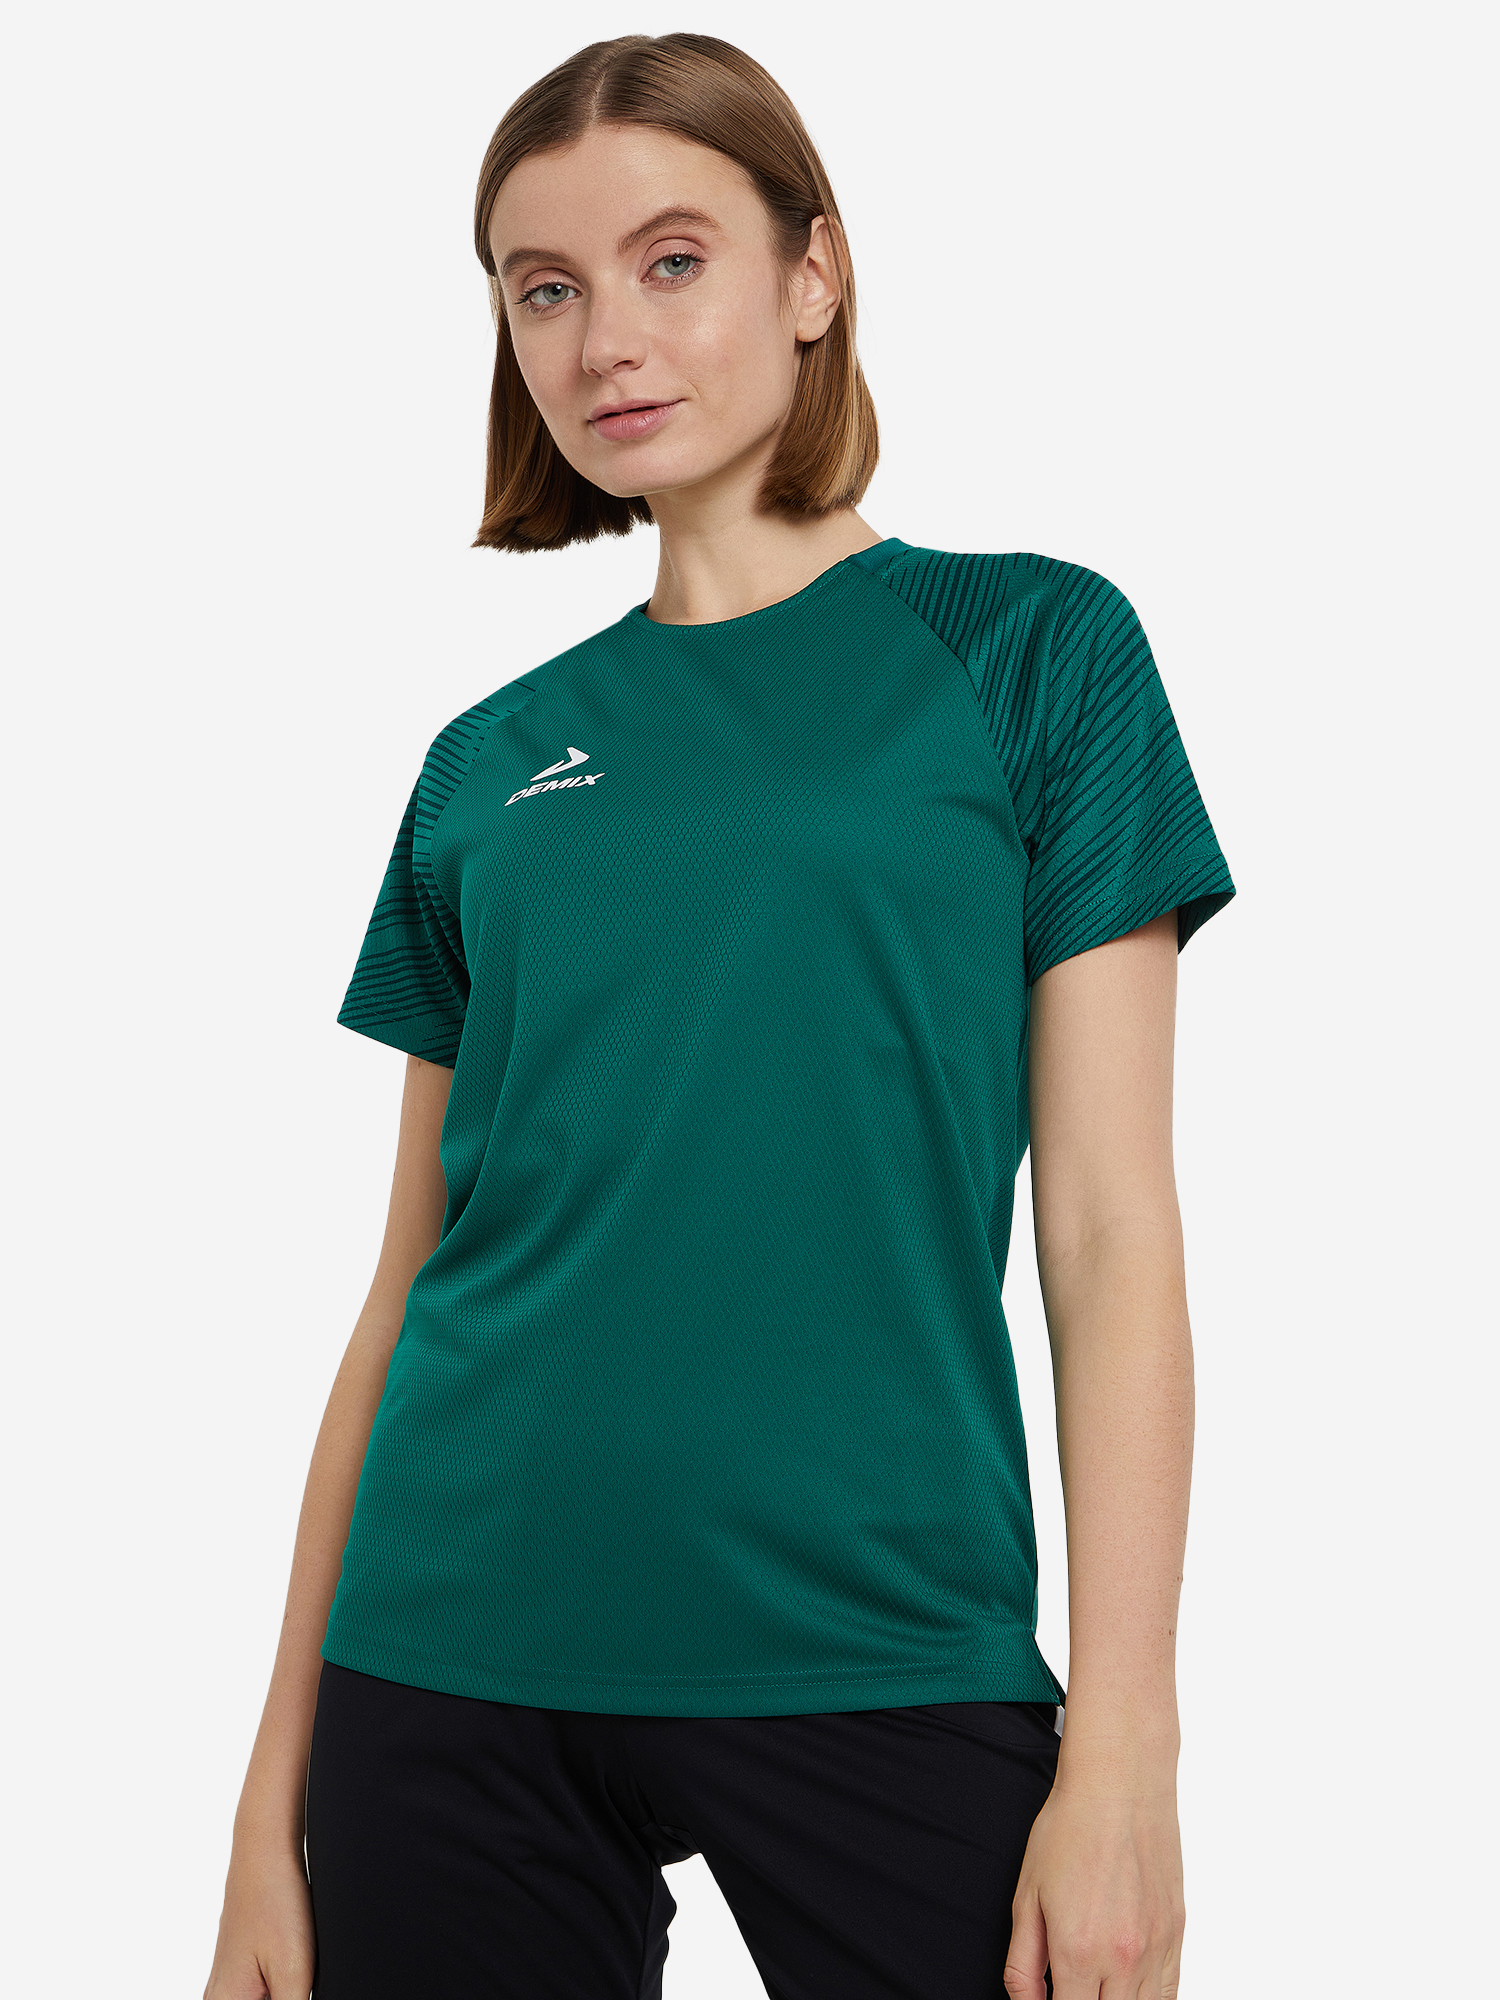 Футболка женская Demix Winger, Зеленый футболка женская demix winger оранжевый